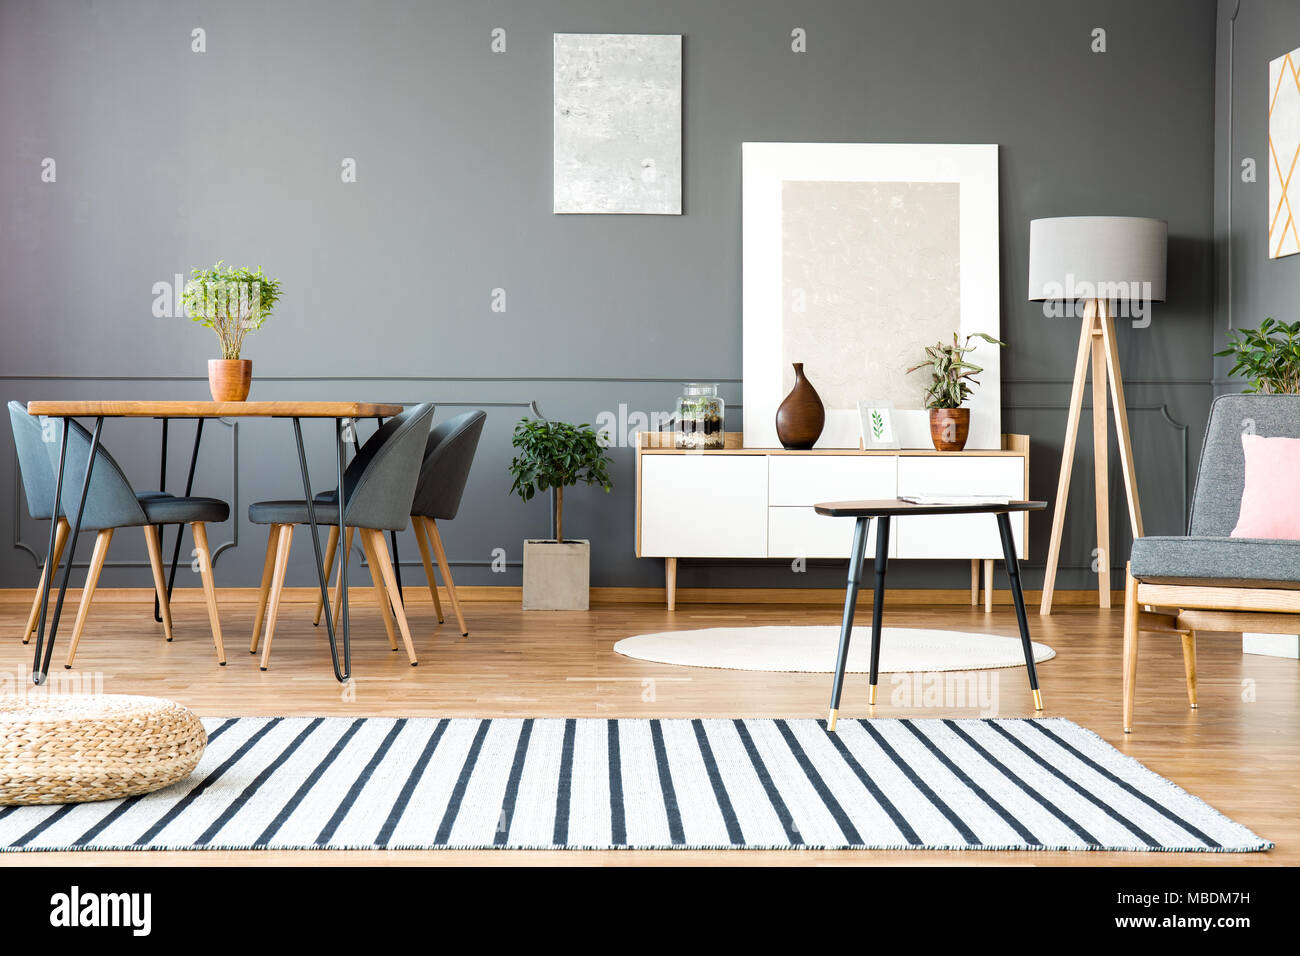 Gestreiften Teppich in Grau open space Interieur mit Stühle am Esstisch und Gemälden an der Wand Stockfoto